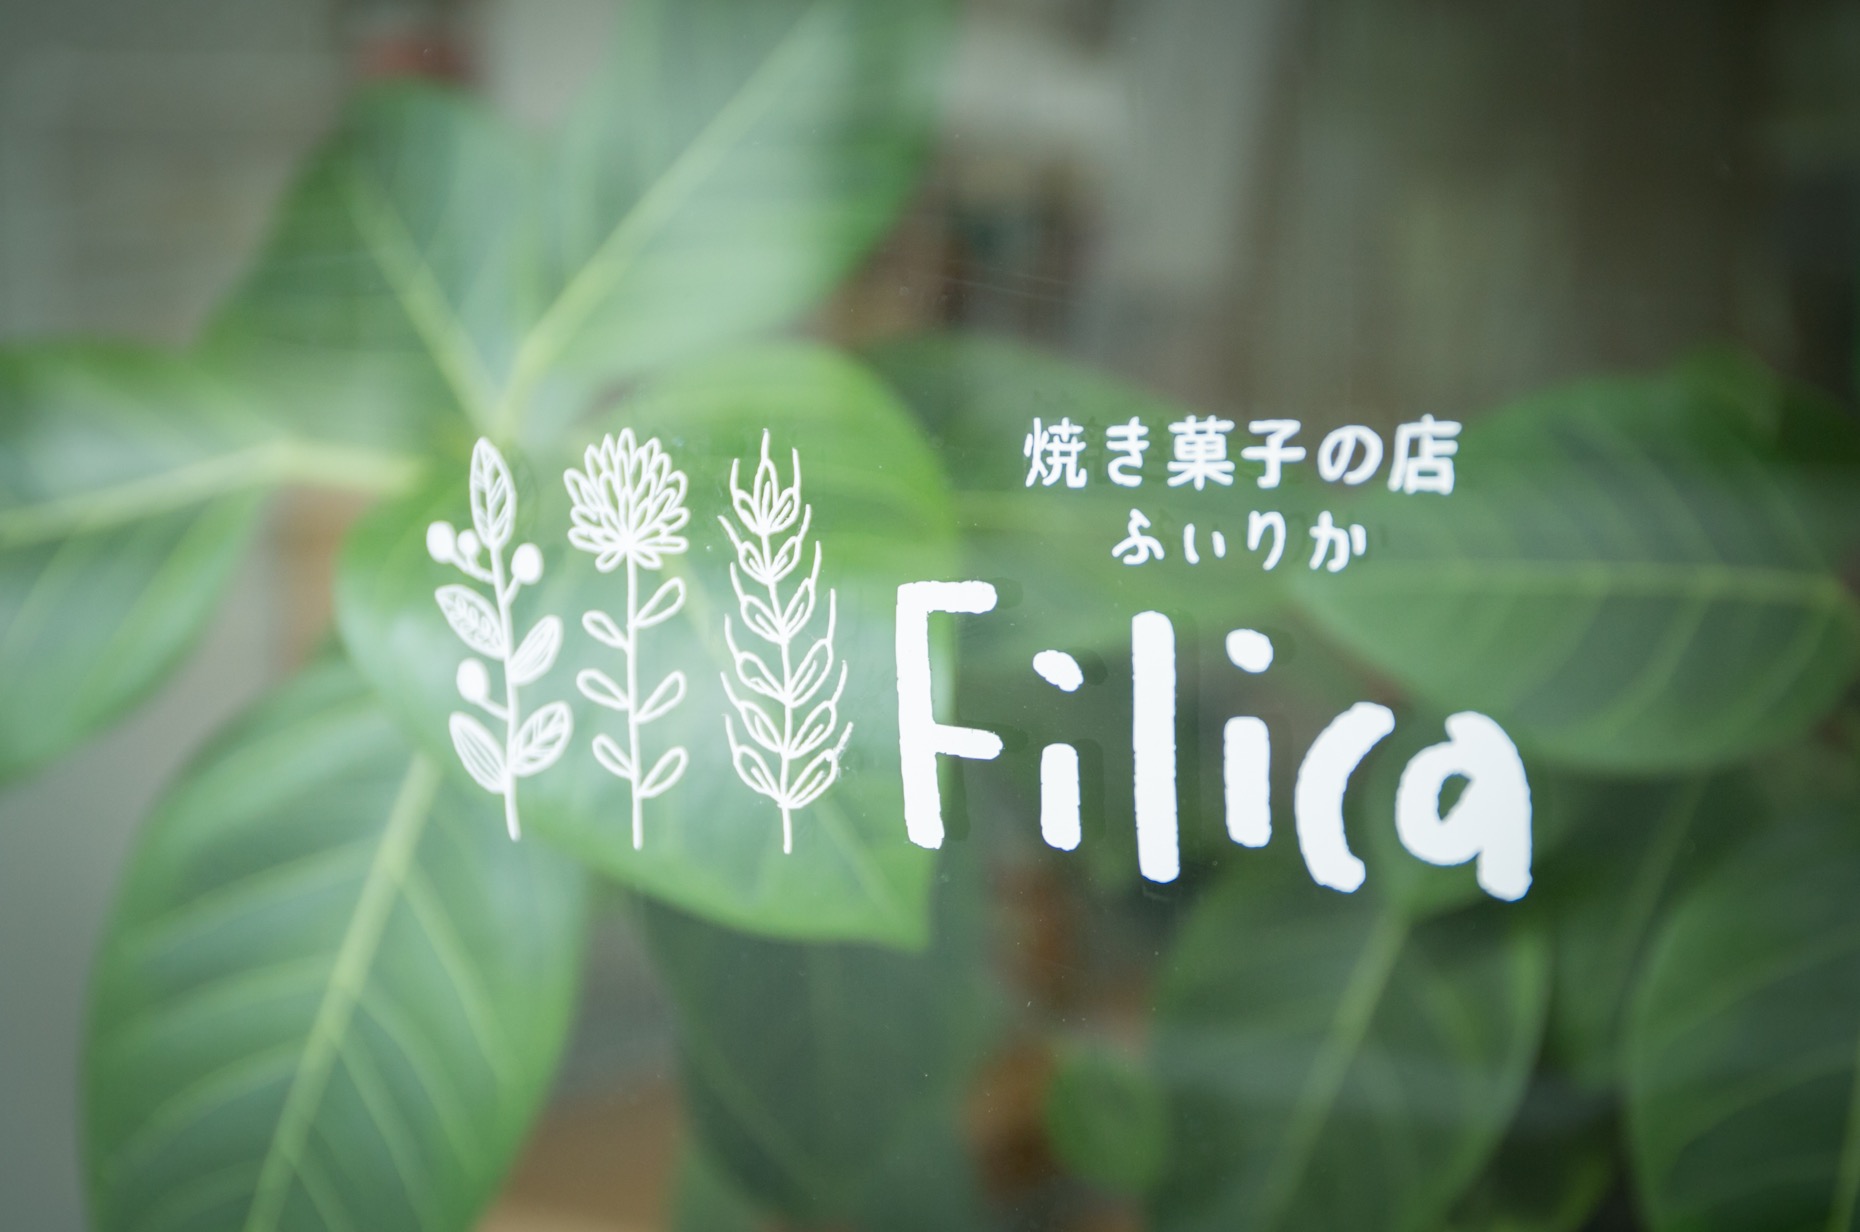 filica_14